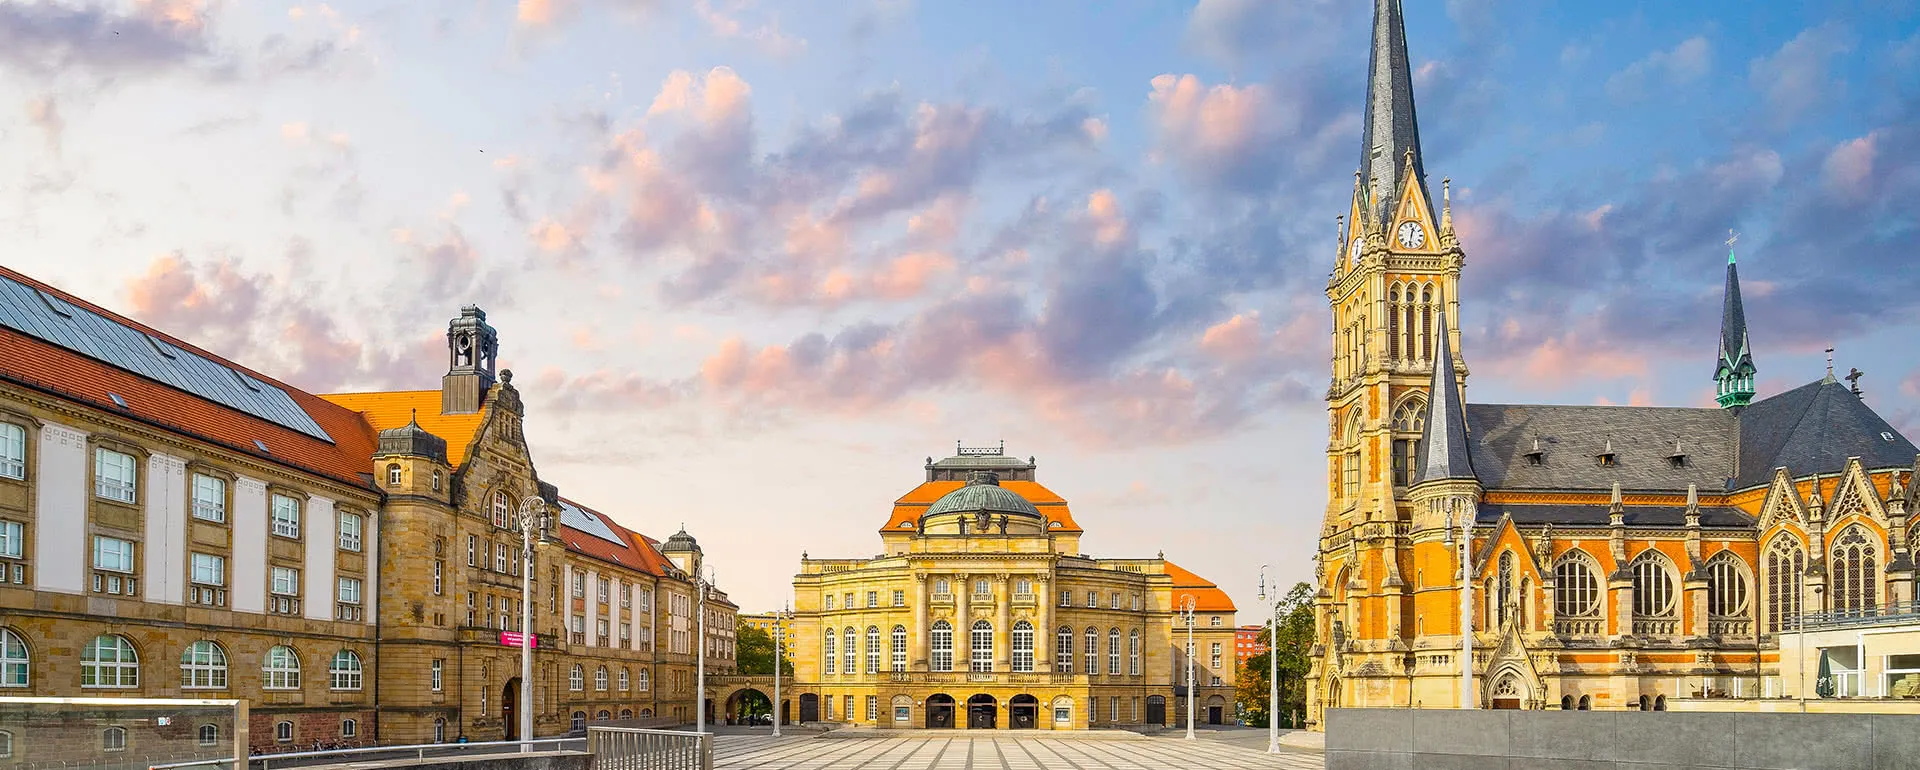 Chemnitz panorama image